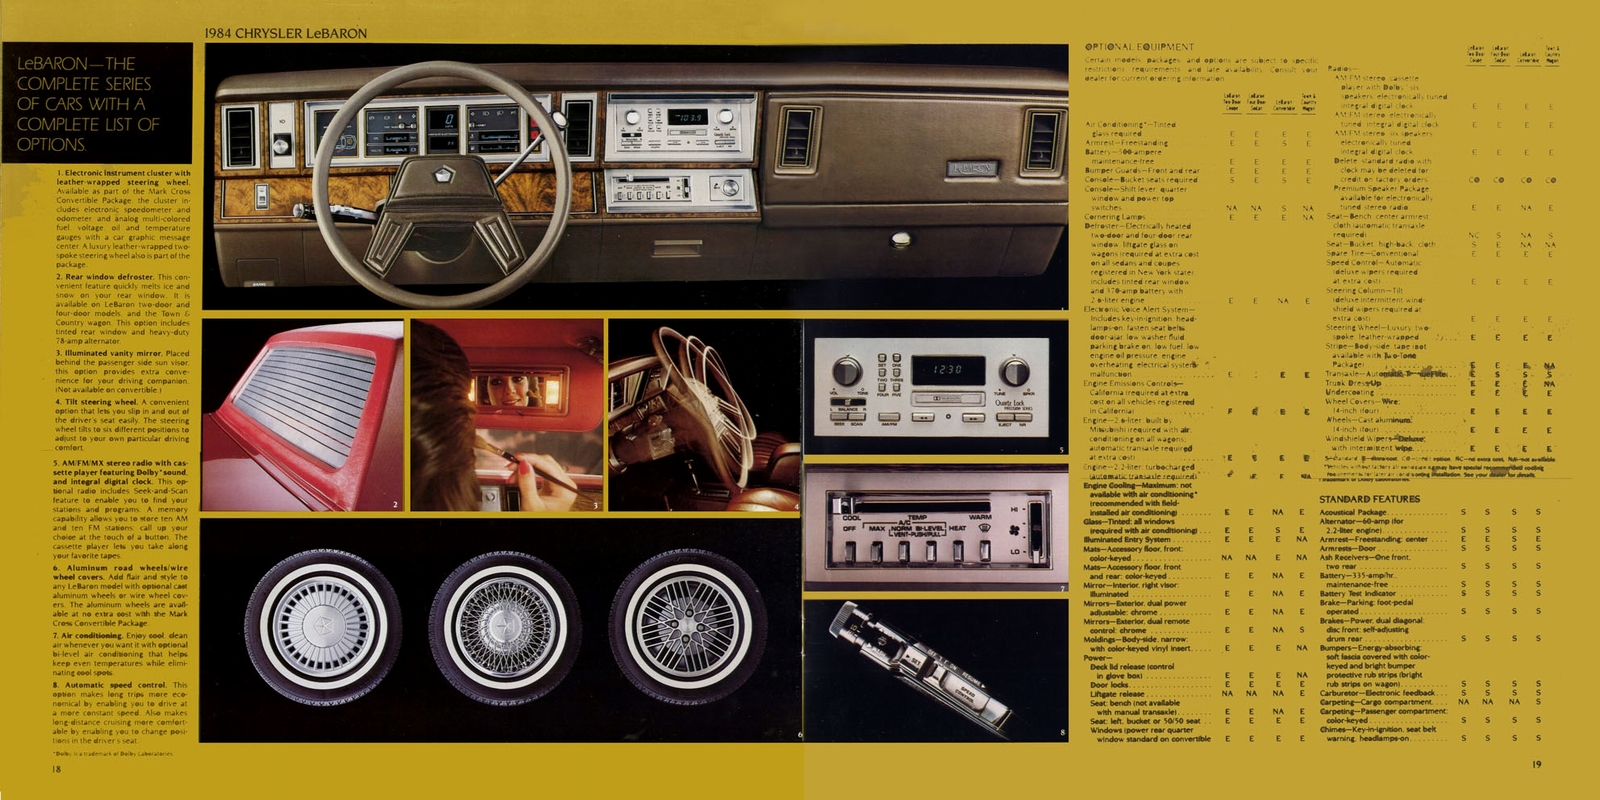 n_1984 Chrysler LeBaron-18-19.jpg